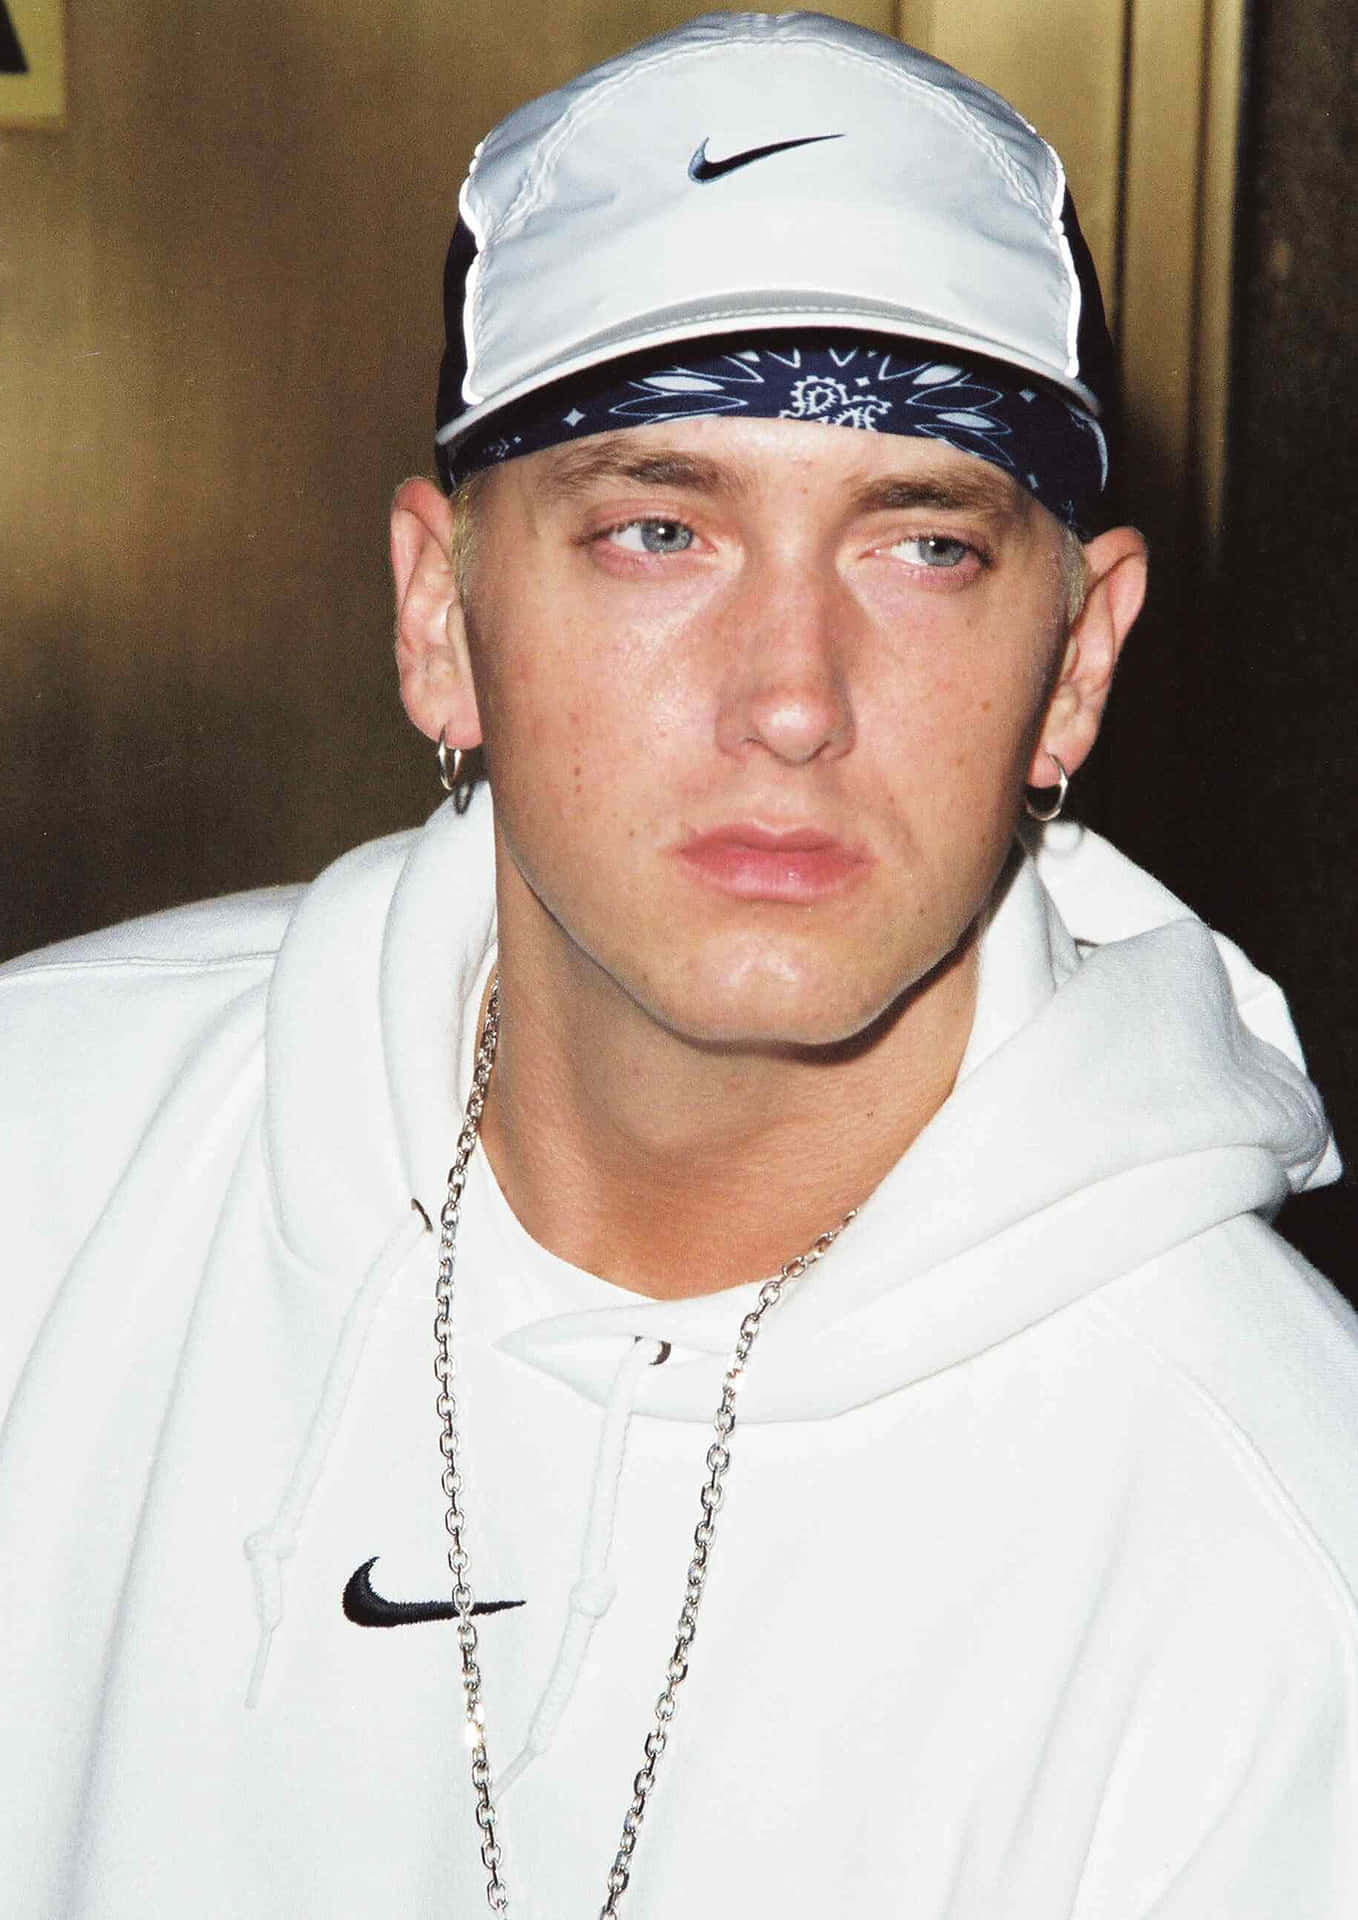 Rapperleggendario, Eminem